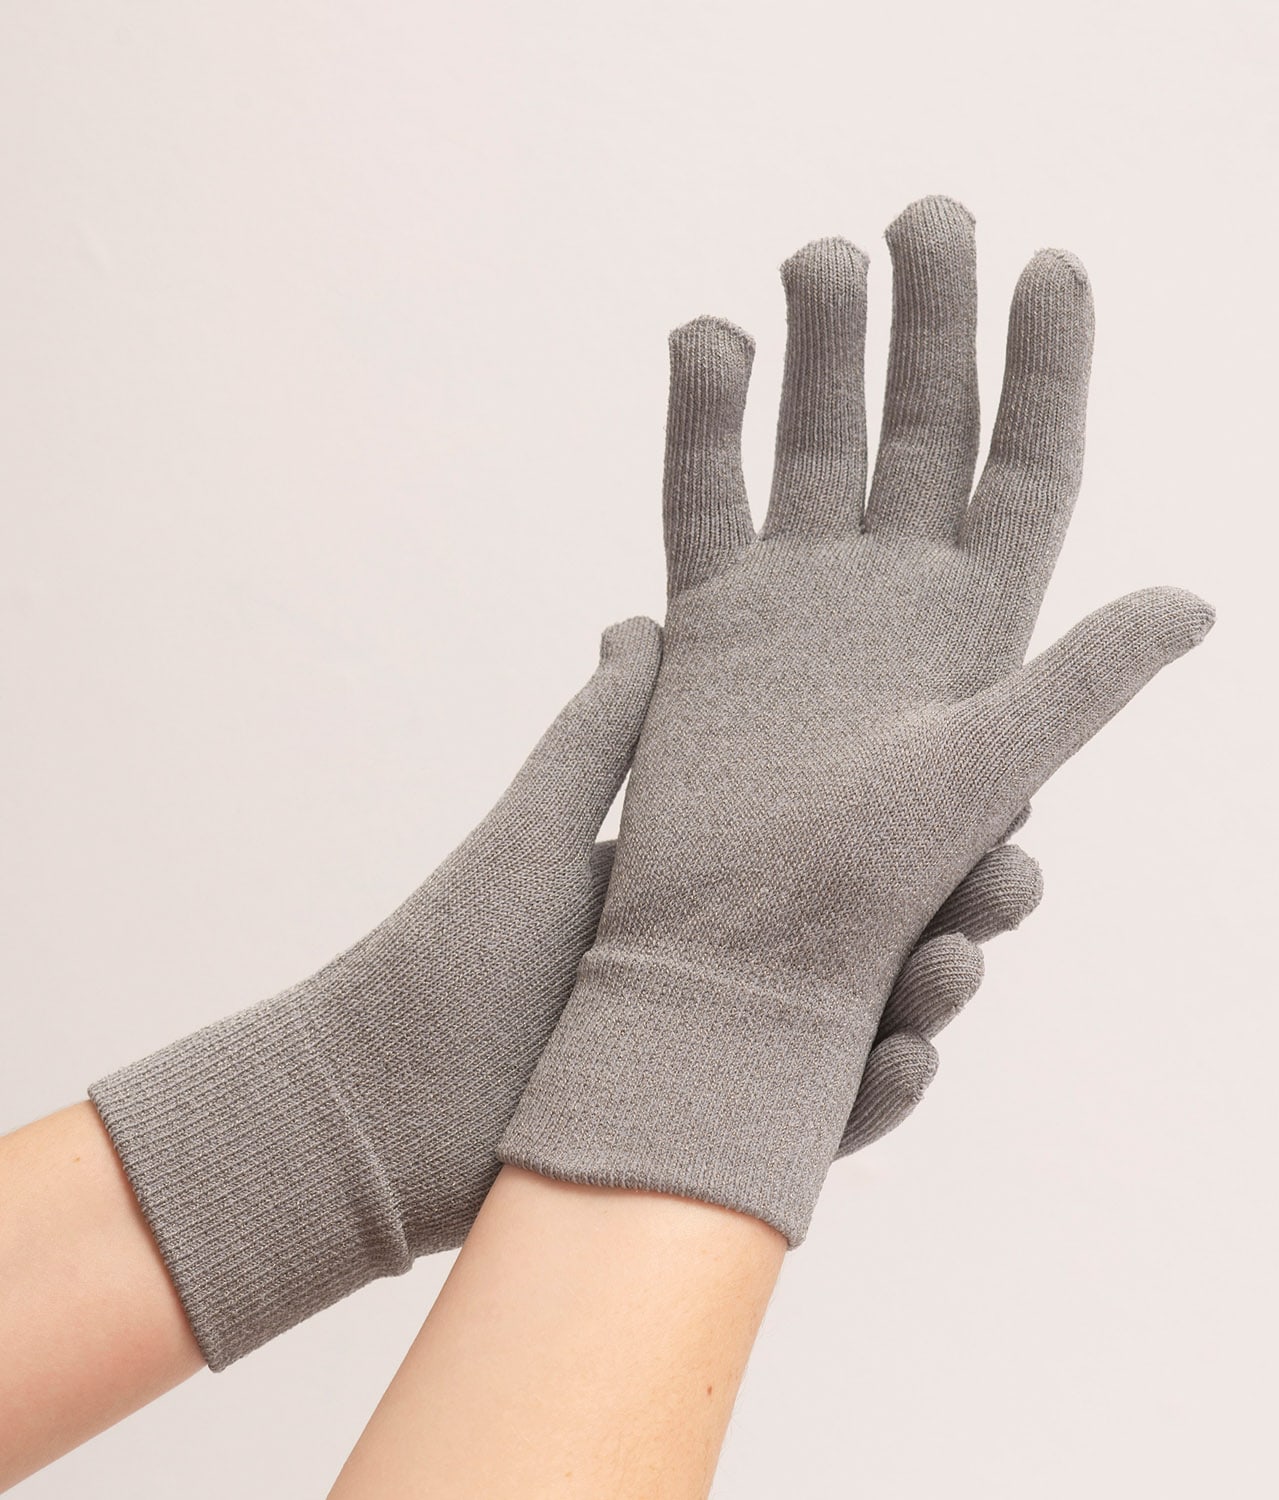 EMF Shielding Gloves from Leblok®